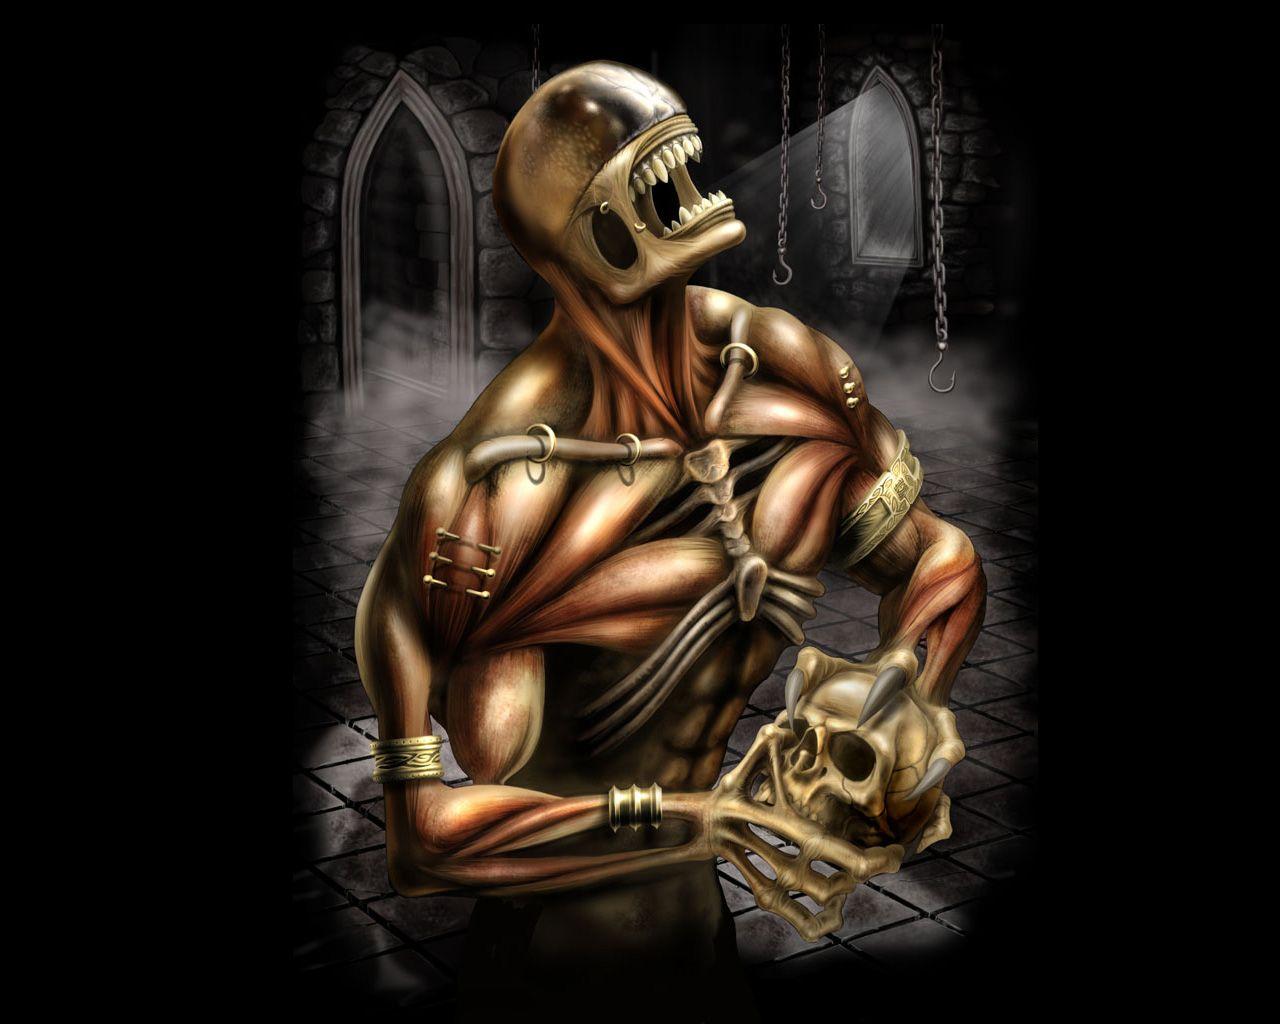 Skeleton with Muscles holding Skull wallpaper from Skulls